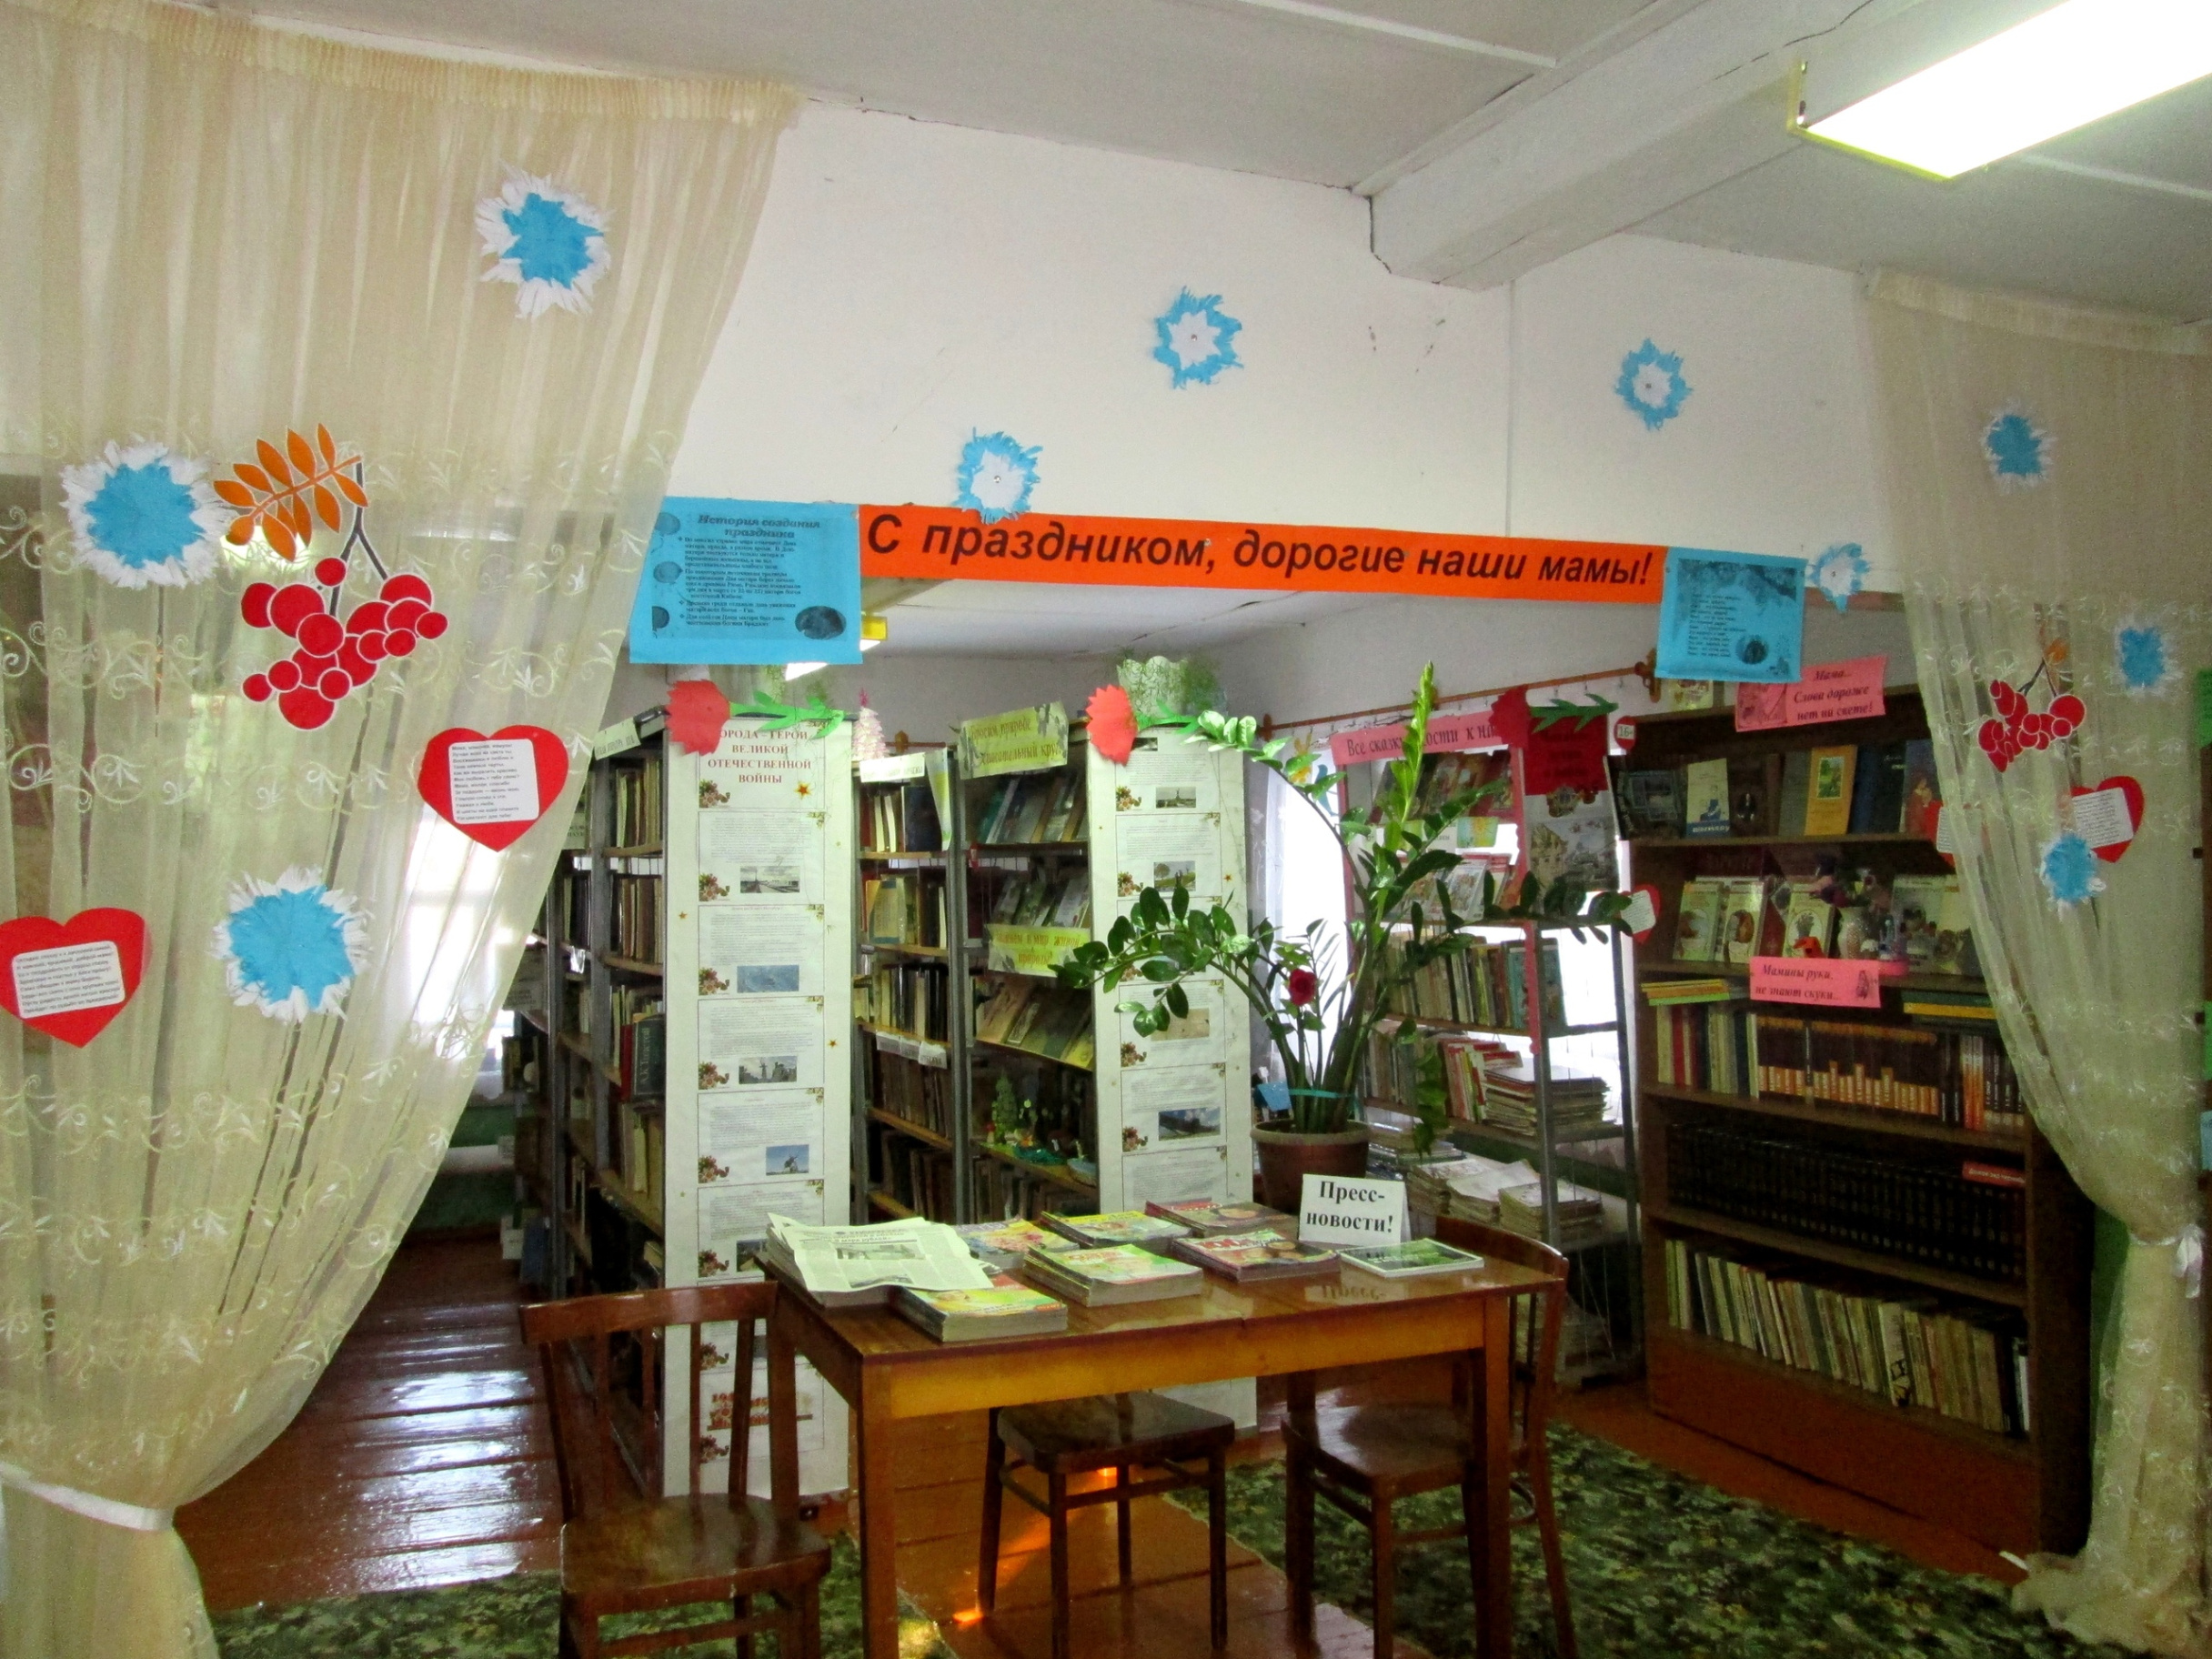 Азиковская сельская библиотека